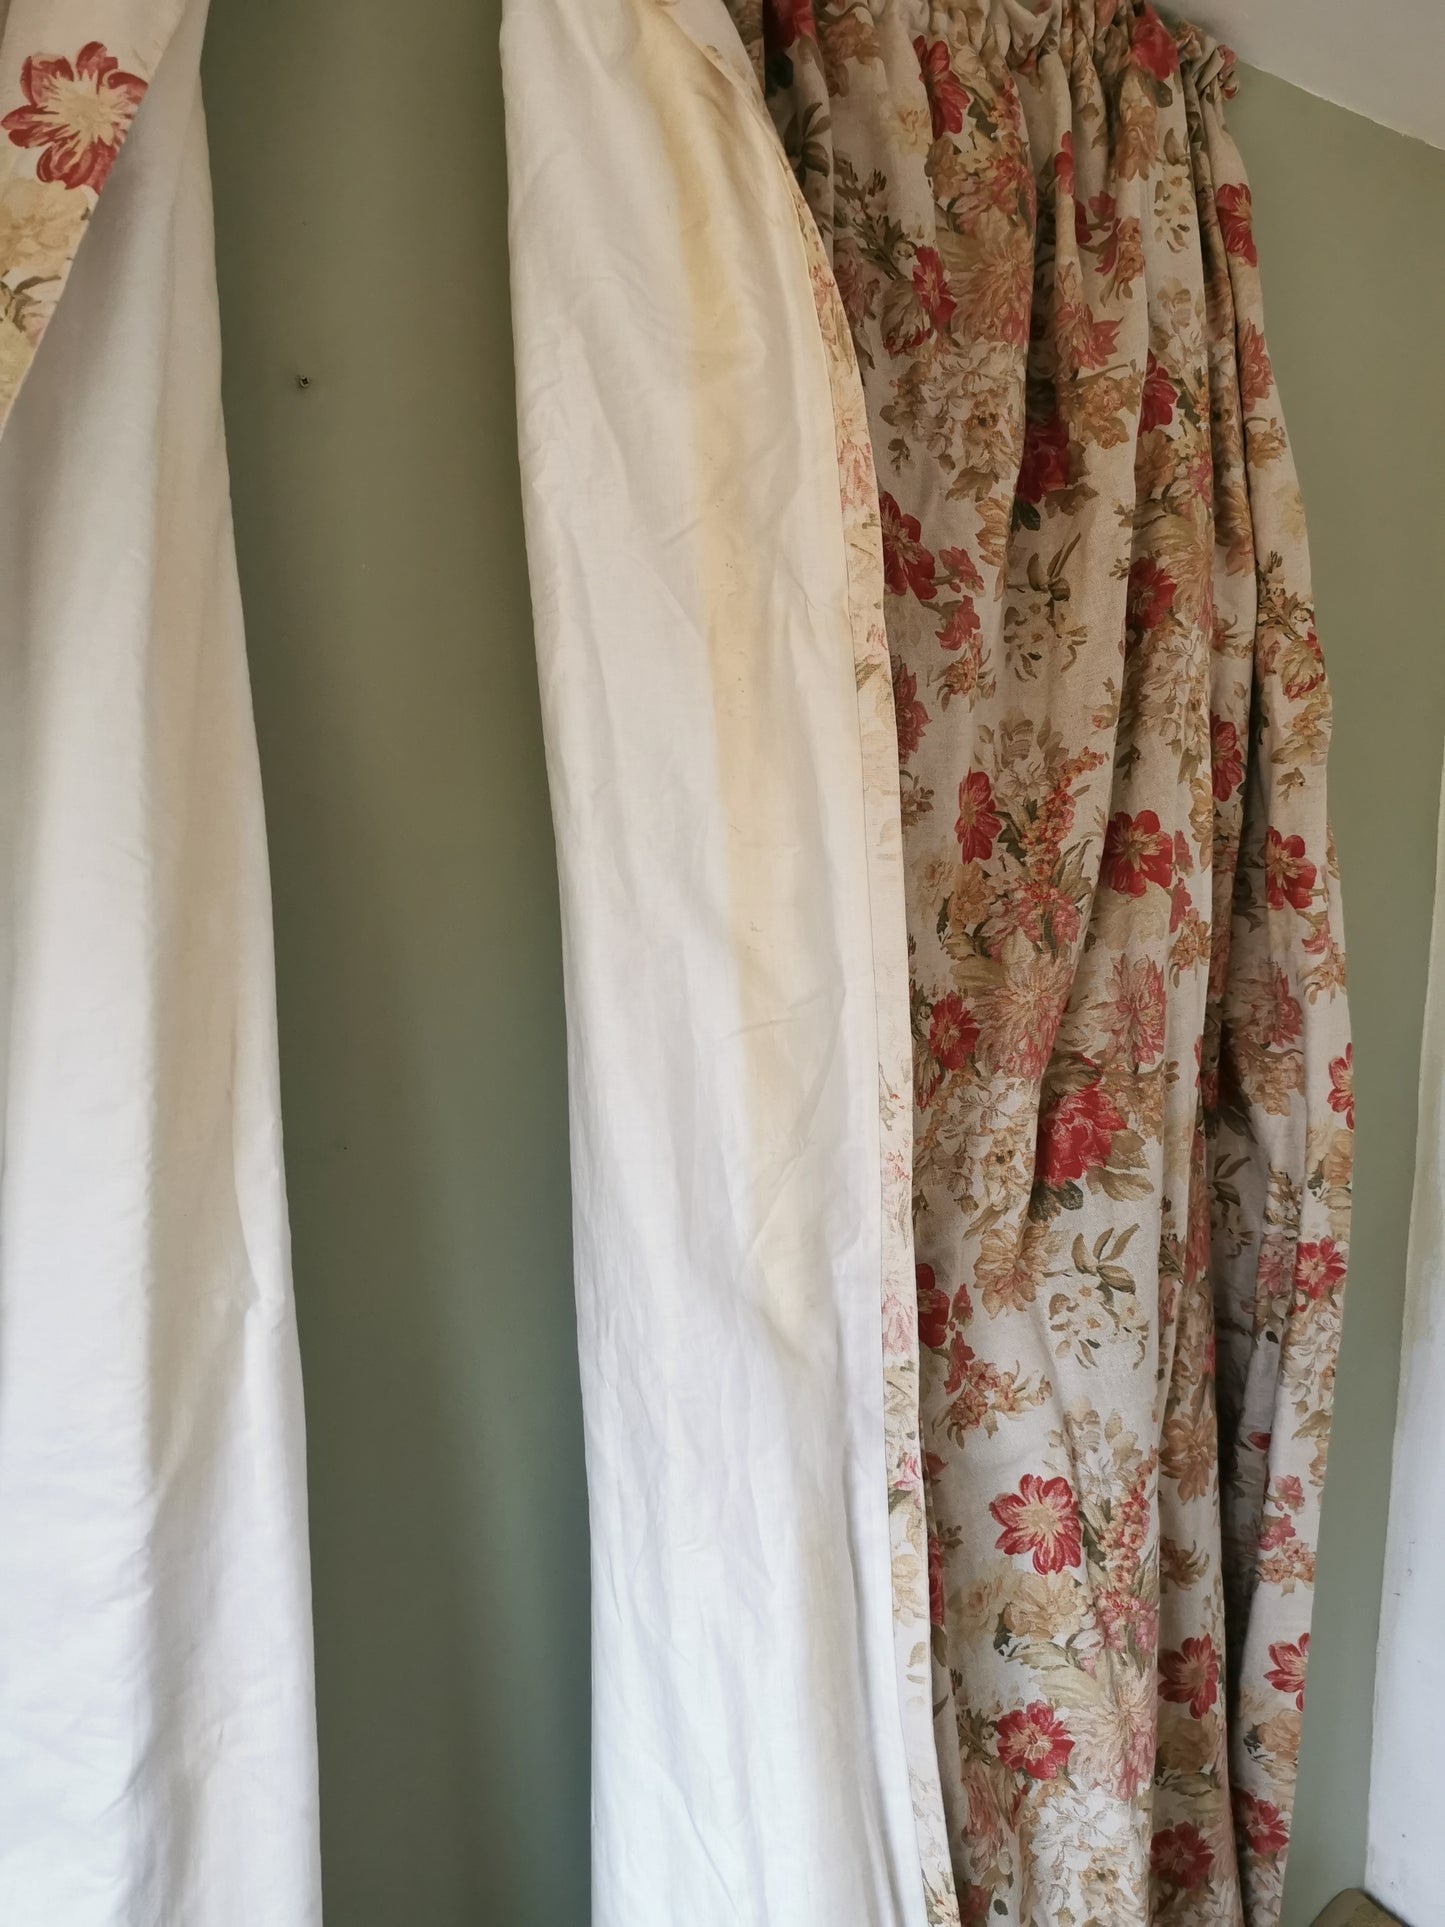 Pair Floral Curtains